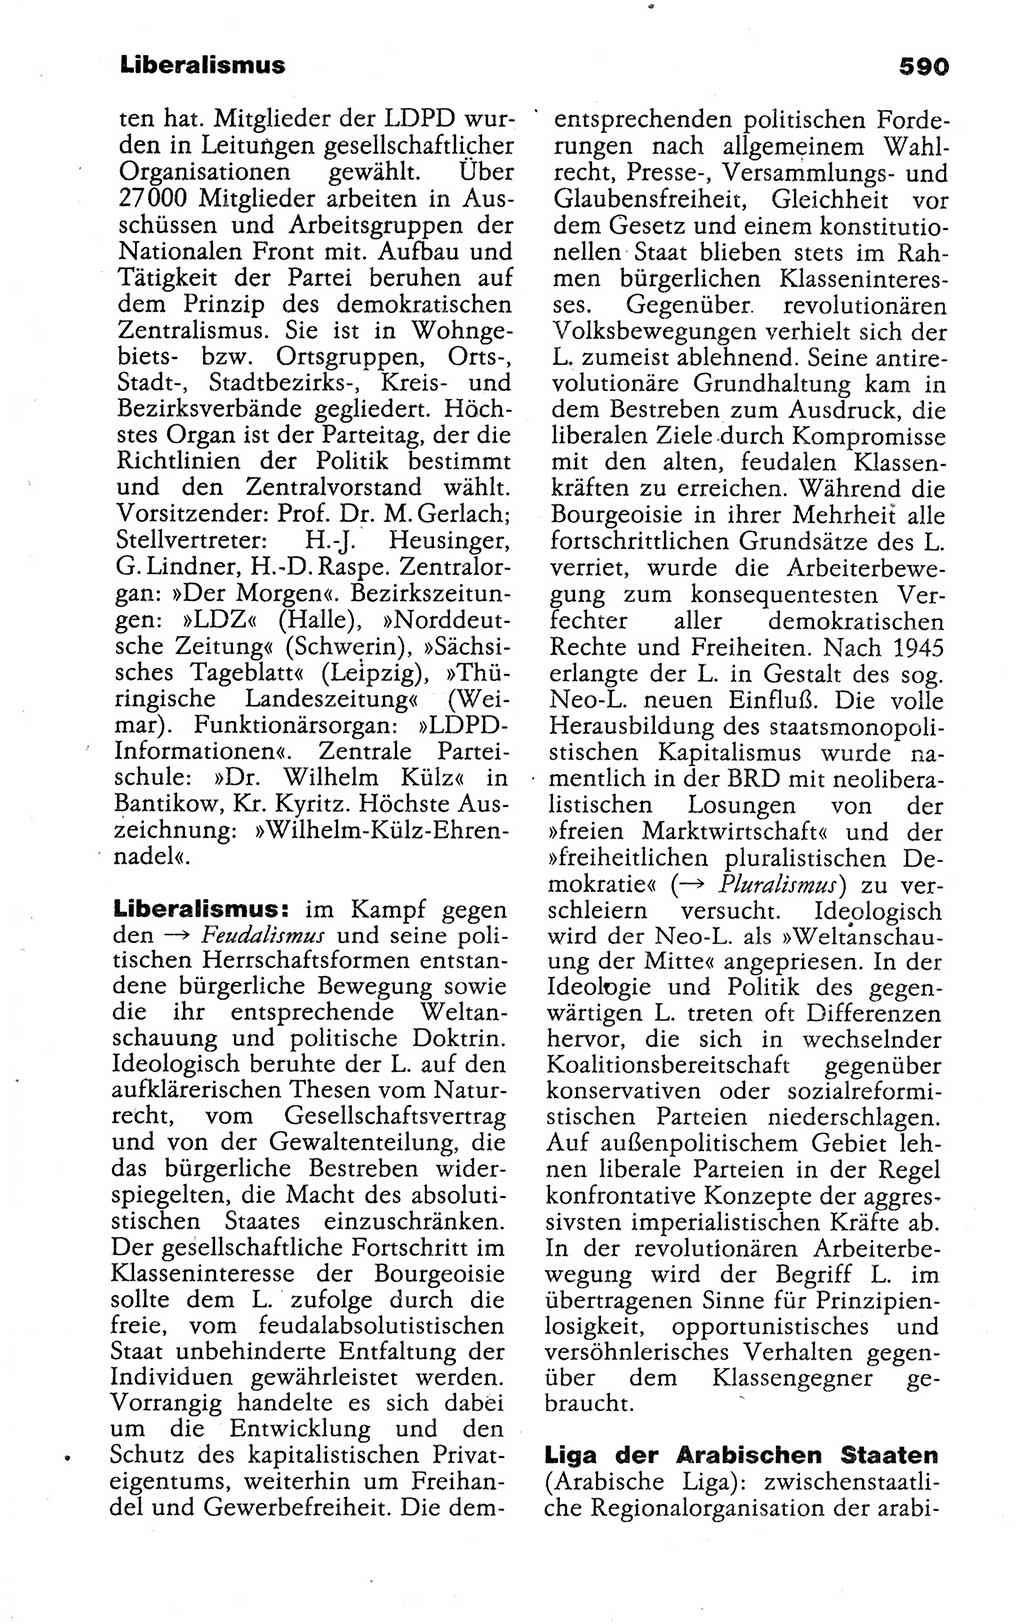 Kleines politisches Wörterbuch [Deutsche Demokratische Republik (DDR)] 1988, Seite 590 (Kl. pol. Wb. DDR 1988, S. 590)